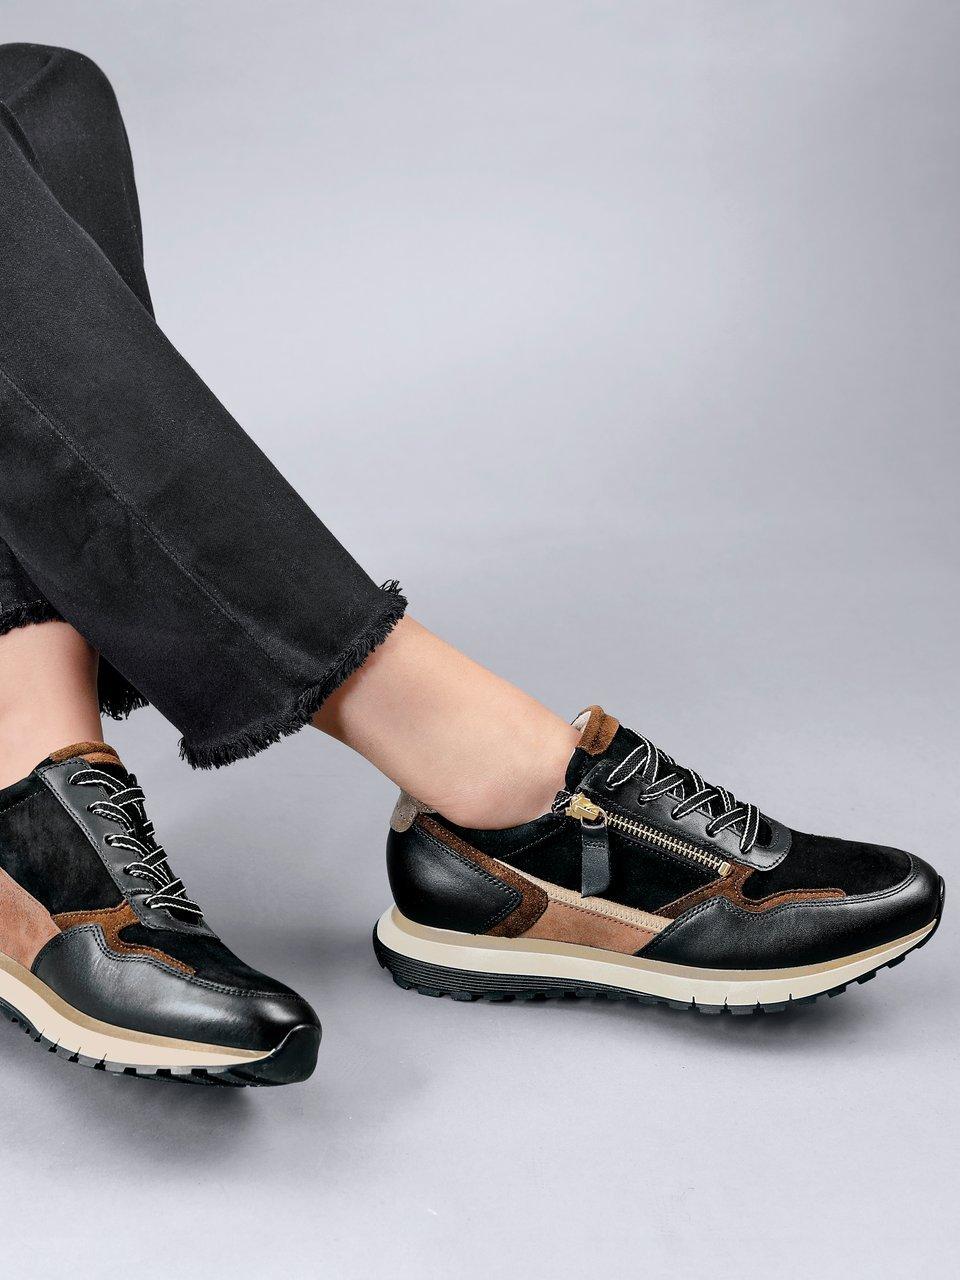 Blokkeren Converteren Algemeen Gabor Comfort - Sneakers met leren binnenwerk - zwart/bruin